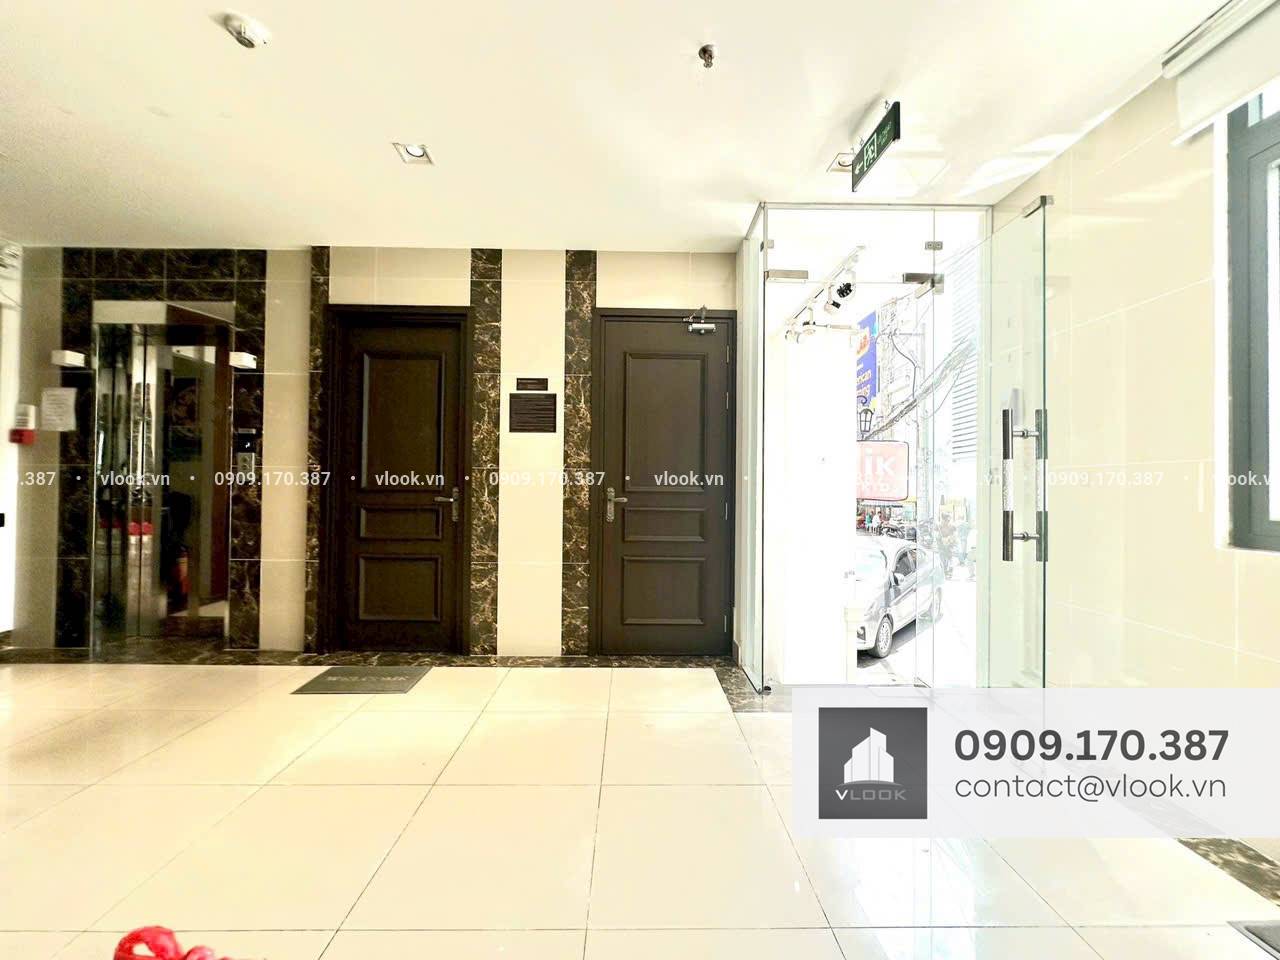 Cao ốc văn phòng cho thuê tòa nhà PLS 170 Phan Đăng Lưu Building, Quân Bình Thạnh, TP.HCM - vlook.vn